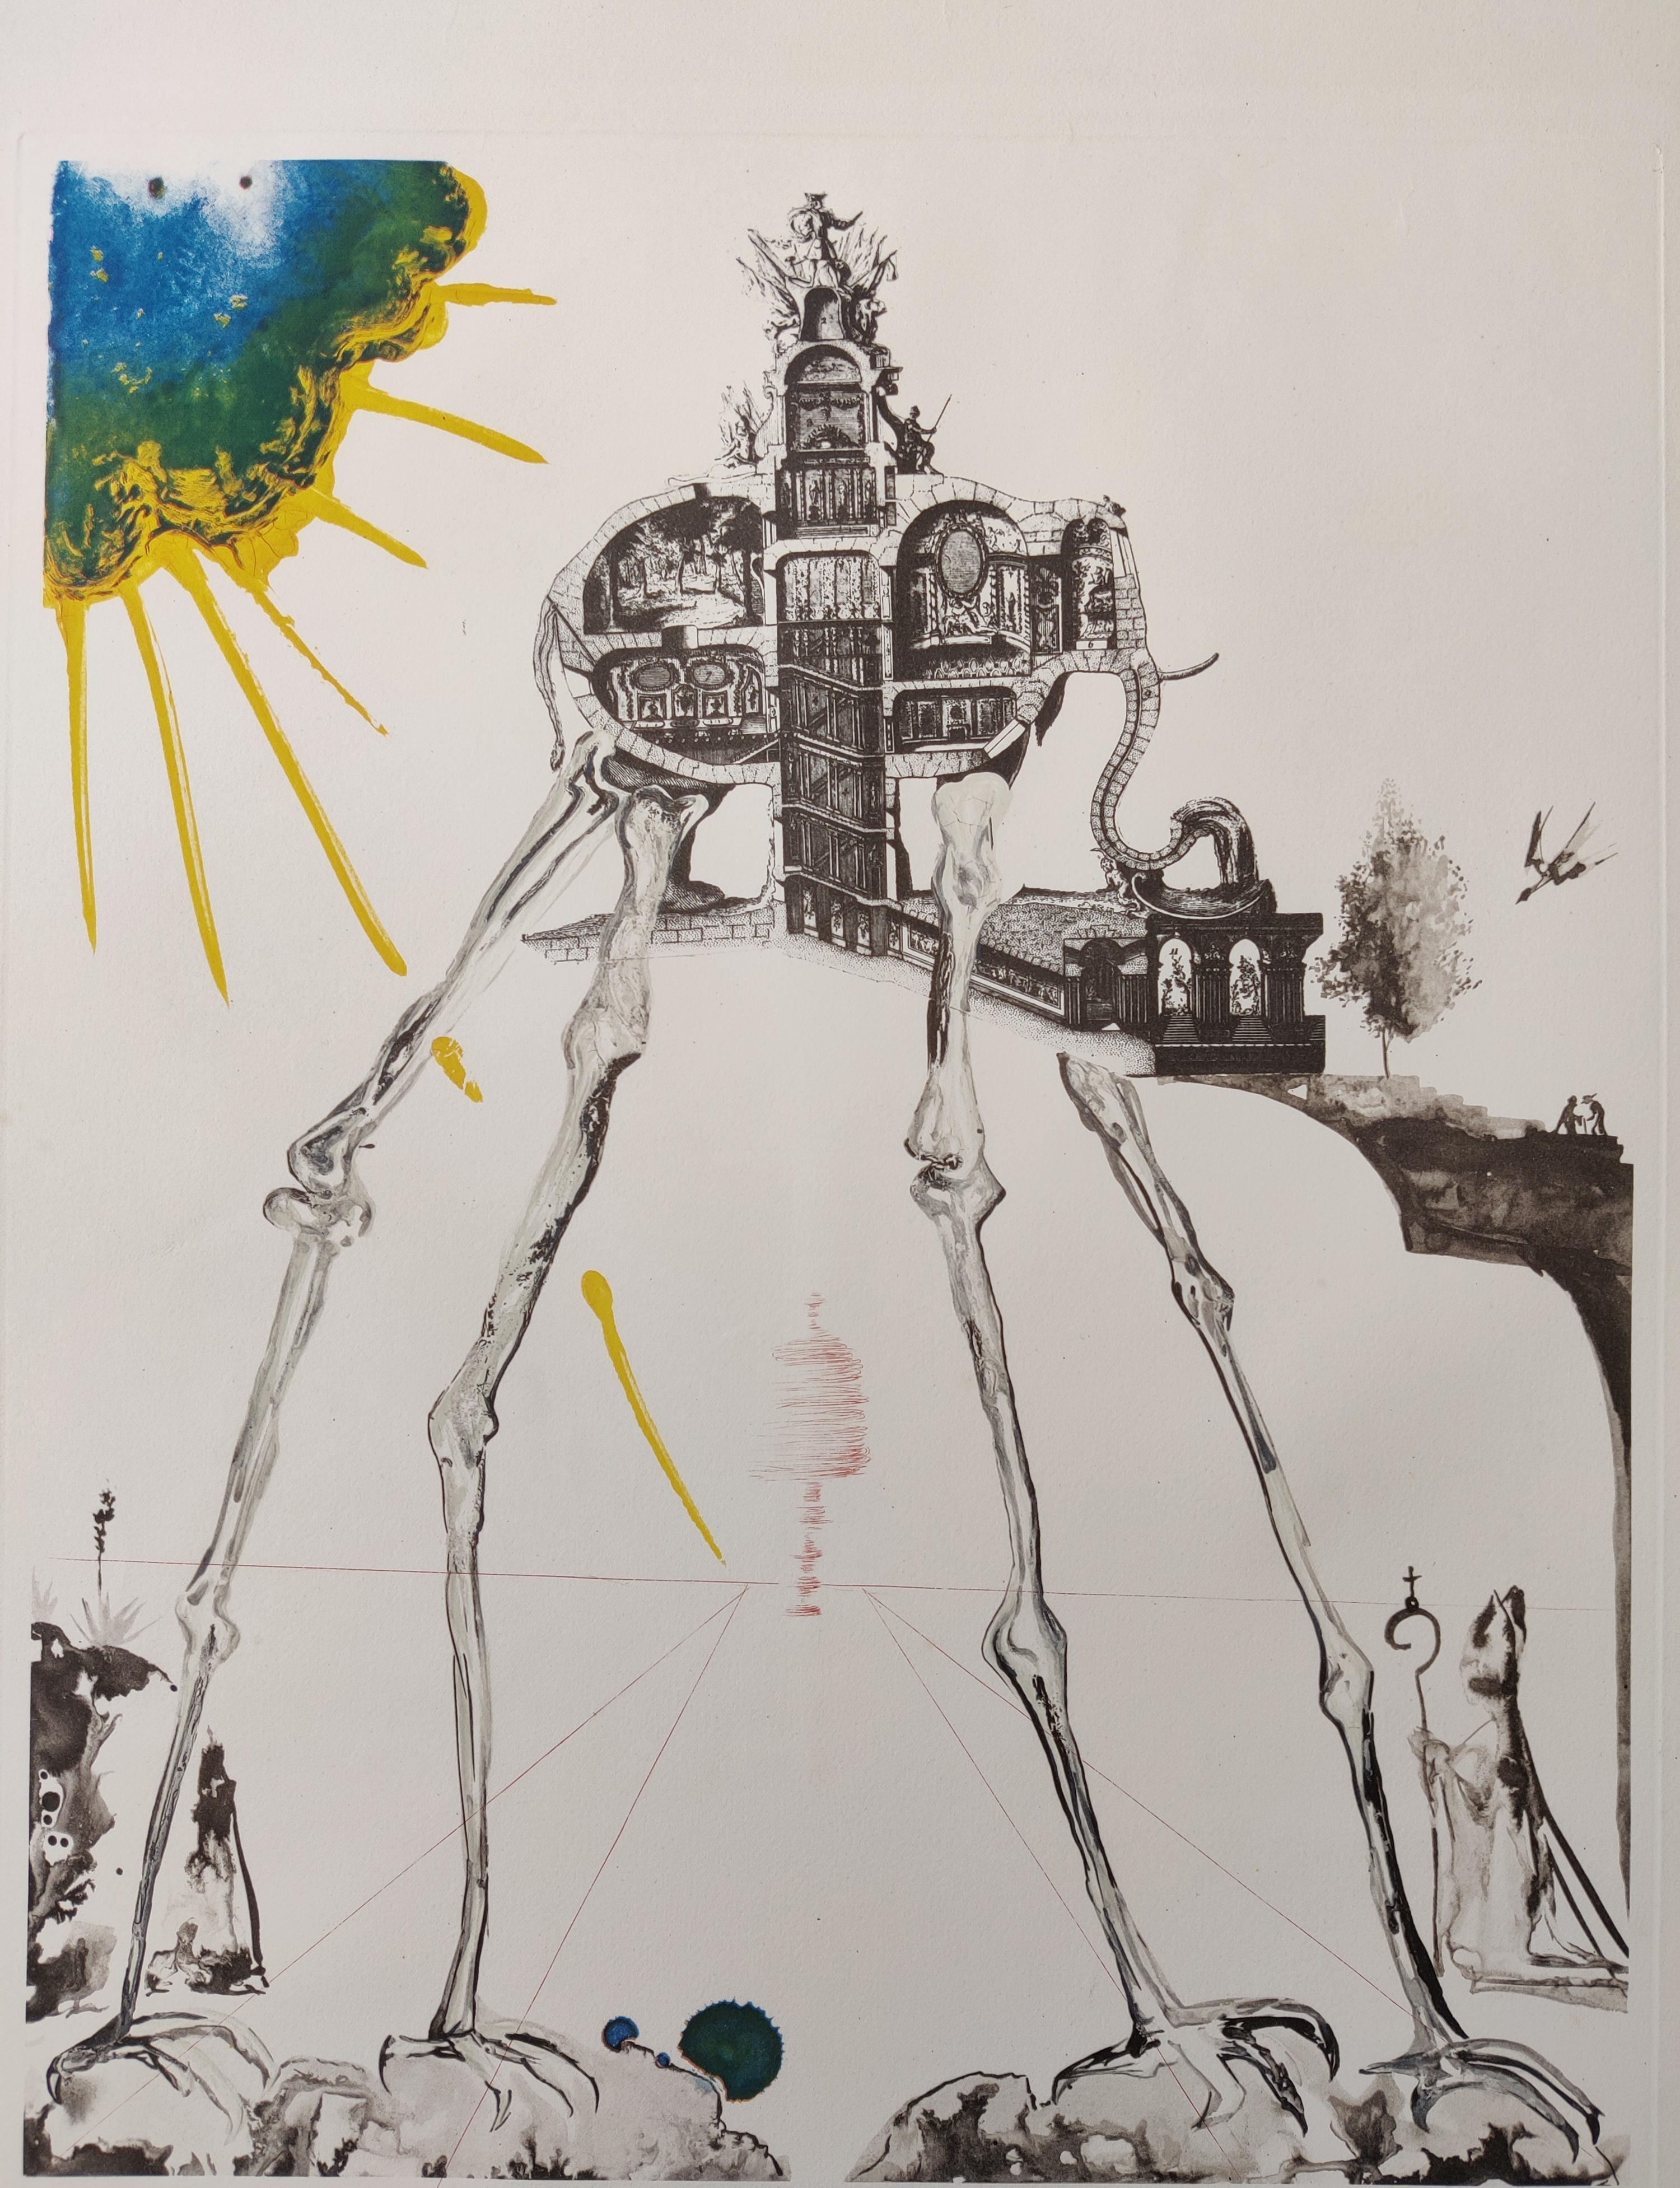 Salvador Dali  
Éléphant de l'espace, extrait de Mémoires du surréalisme, 1971
Lithographie avec gravure en couleurs sur papier Arches
Signé à la main en bas à droite
Numéroté F 16/175
Champ de référence 71-15 D